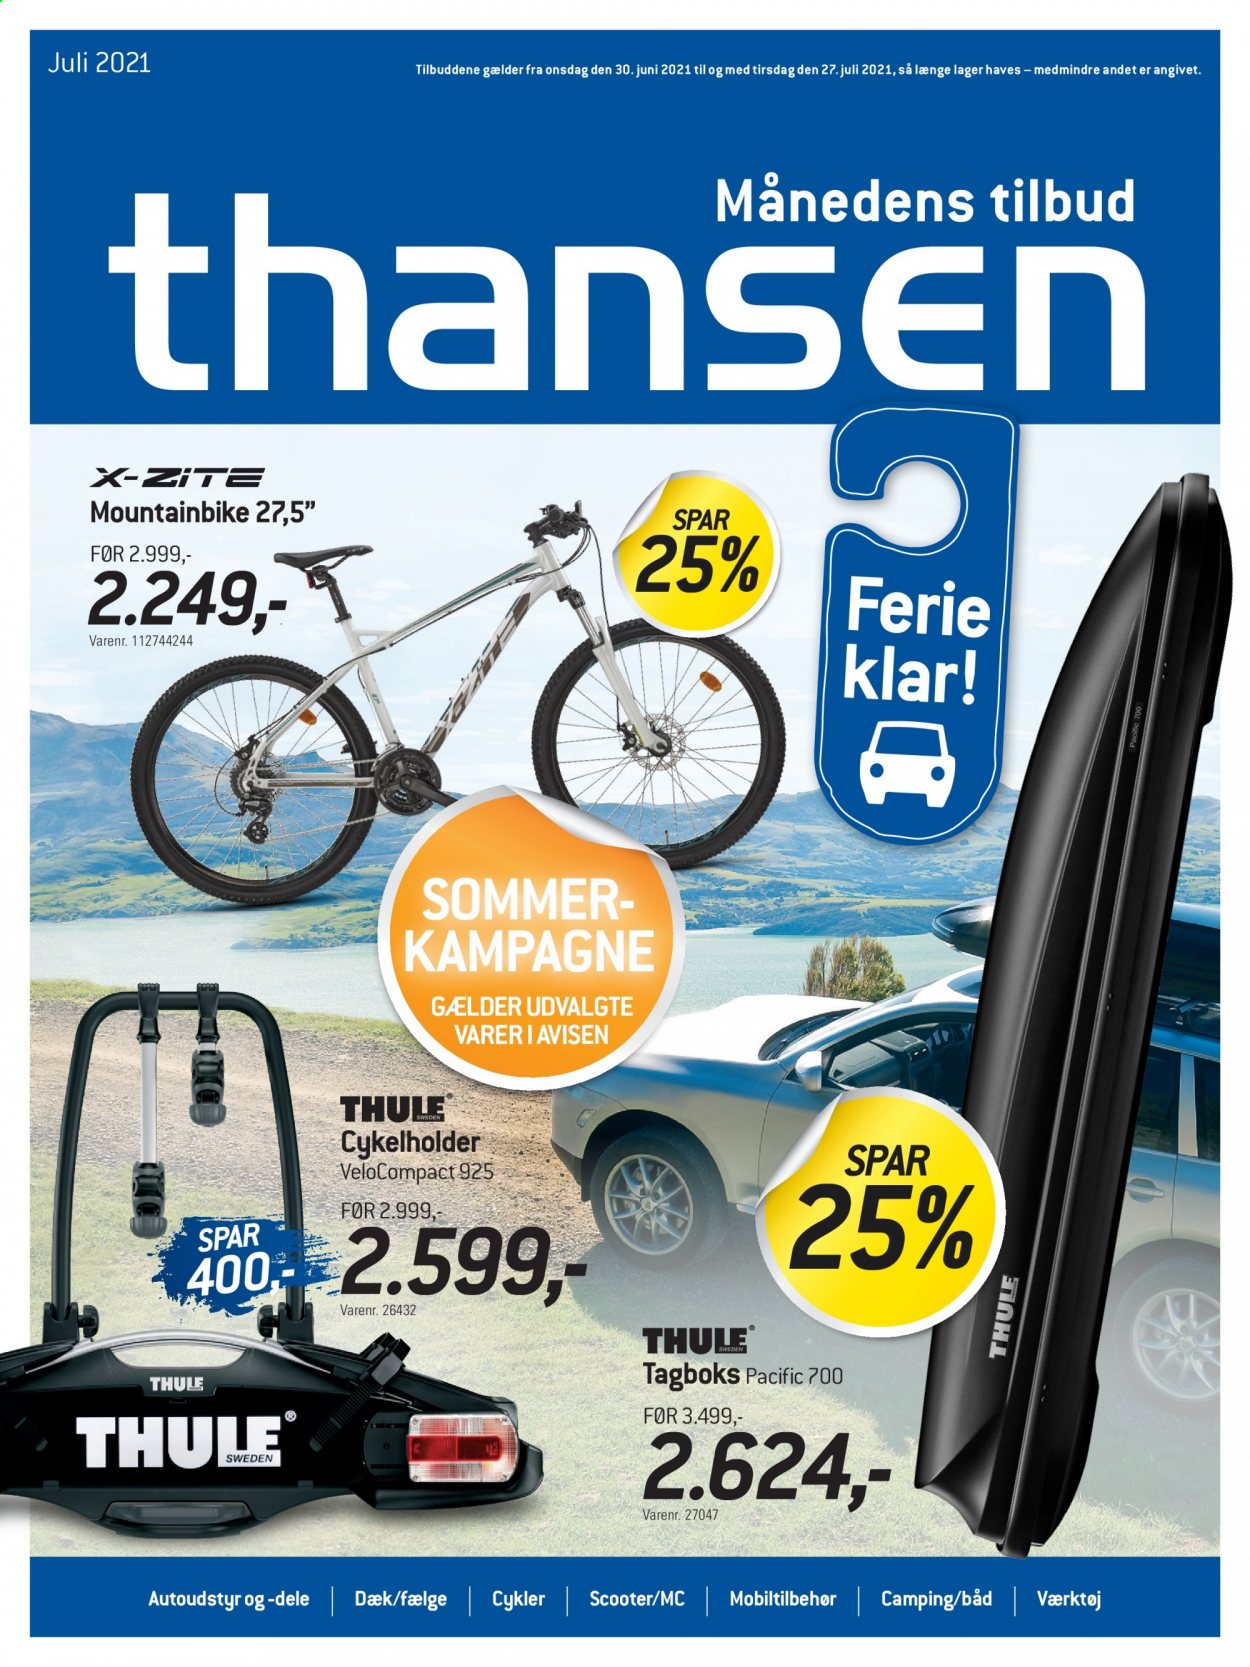 thumbnail - Thansen tilbud  - 30.6.2021 - 27.7.2021 - tilbudsprodukter - cykel, mountainbike. Side 1.